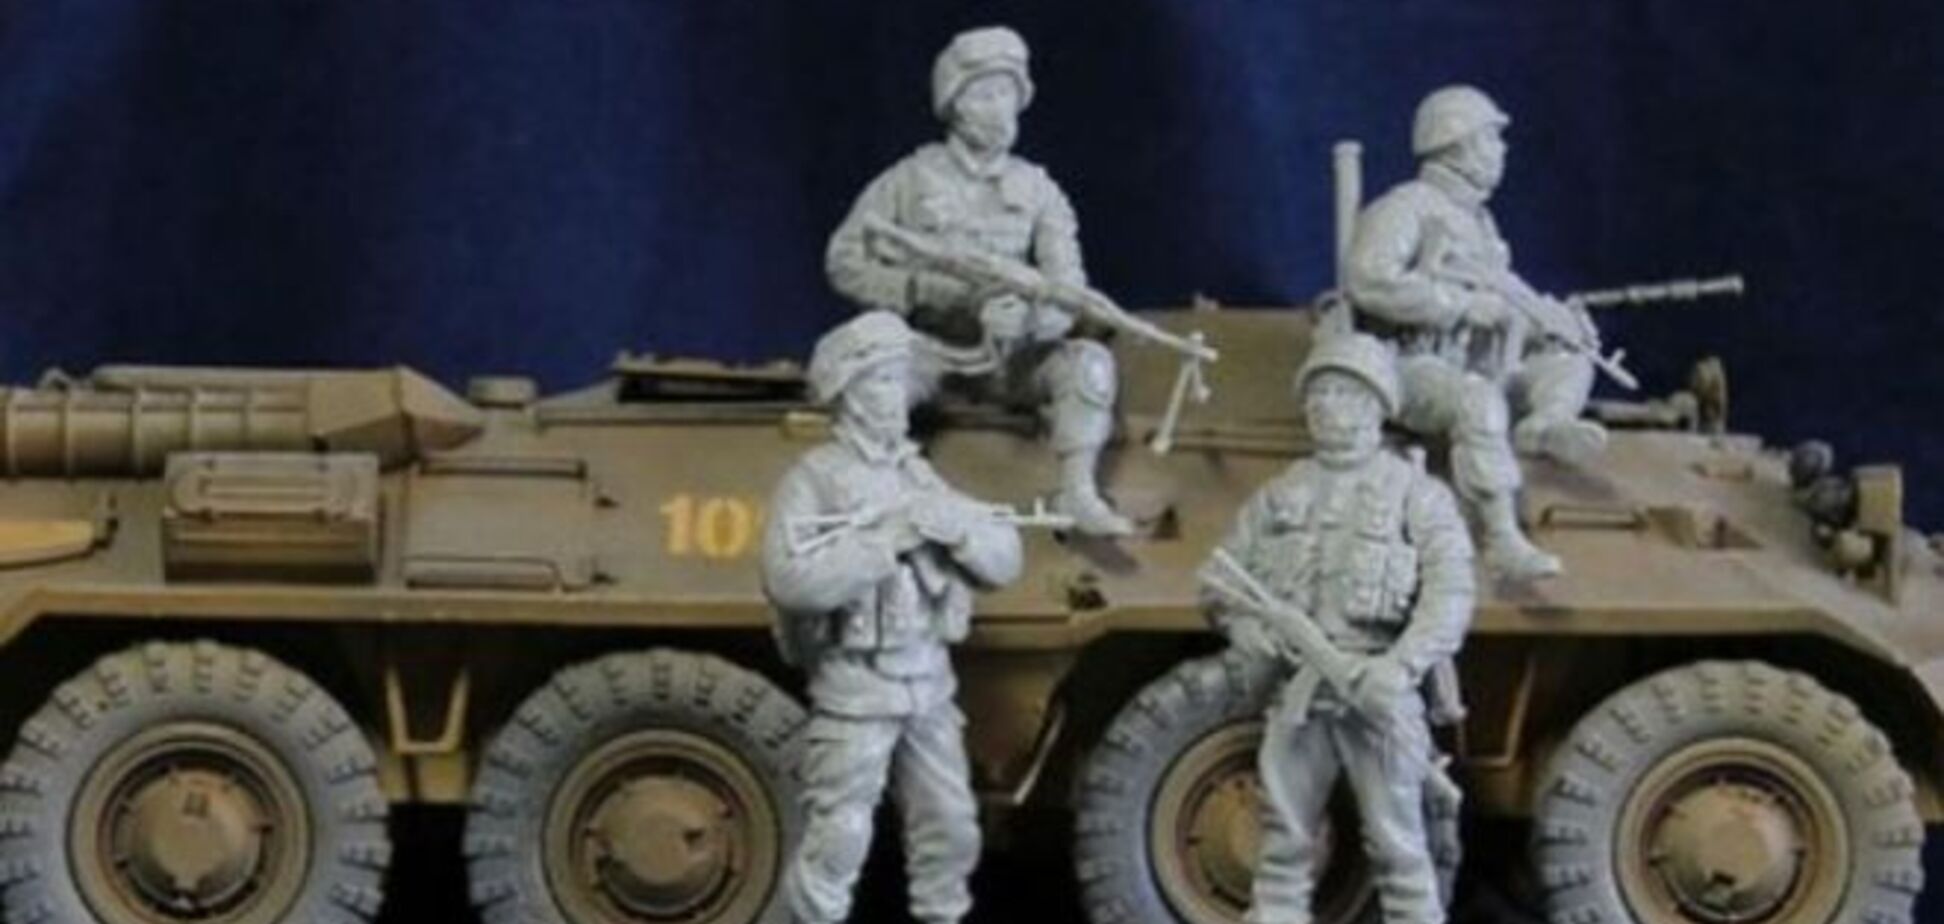 Игрушки 'русского мира': фигурки 'Бабая' и набор солдатиков-террористов